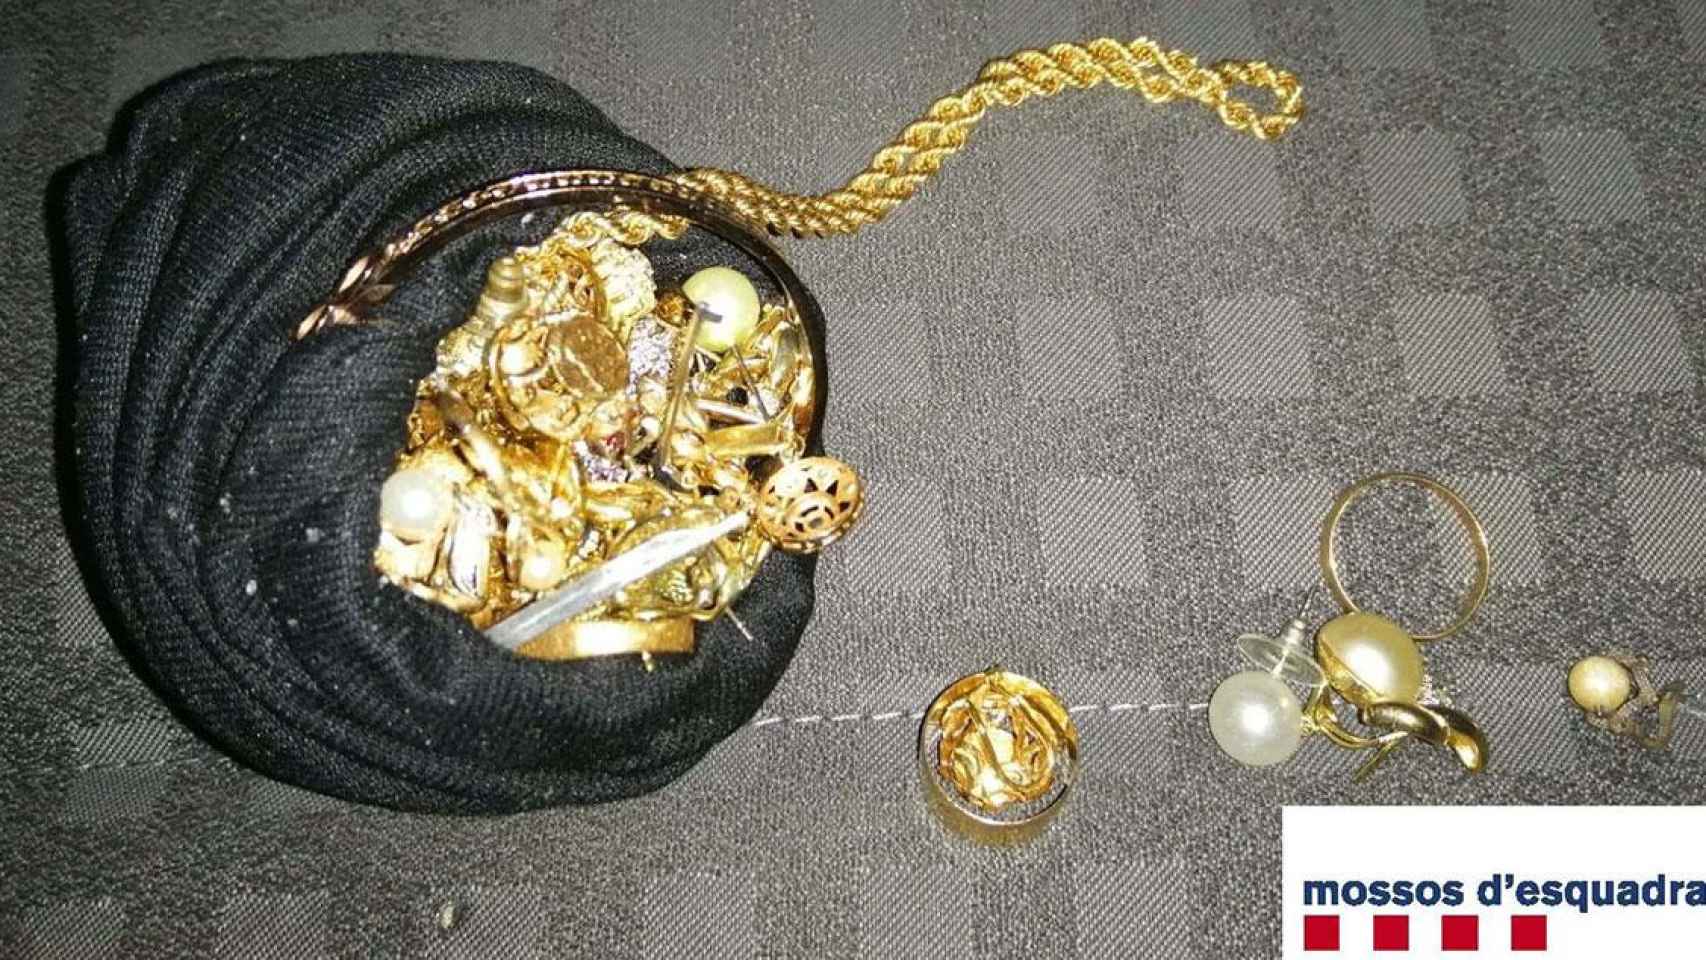 Las joyas que supuestamente han robado los detenidos en un domicilio de Barberà del Vallès (Barcelona) / MOSSOS